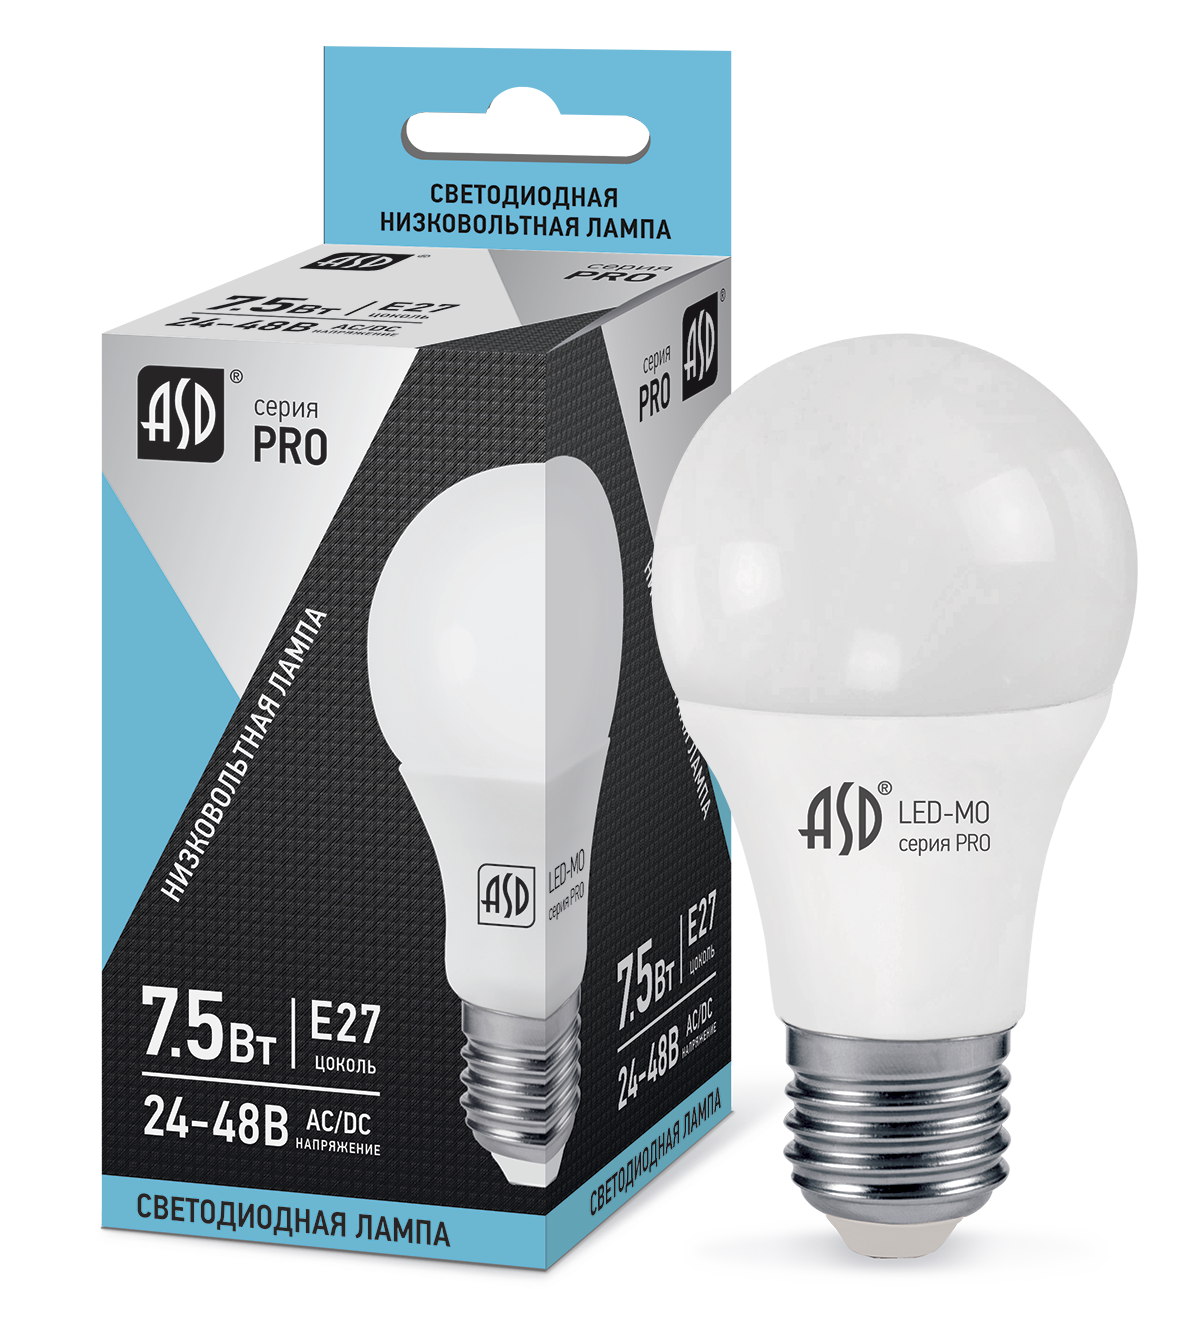 Купить лампа светодиодная низковольтная led-mo-24/48v-pro 7,5вт 24-48в е27 4000к 600лм asd, 100% качество, в наличии на L-ed.ru